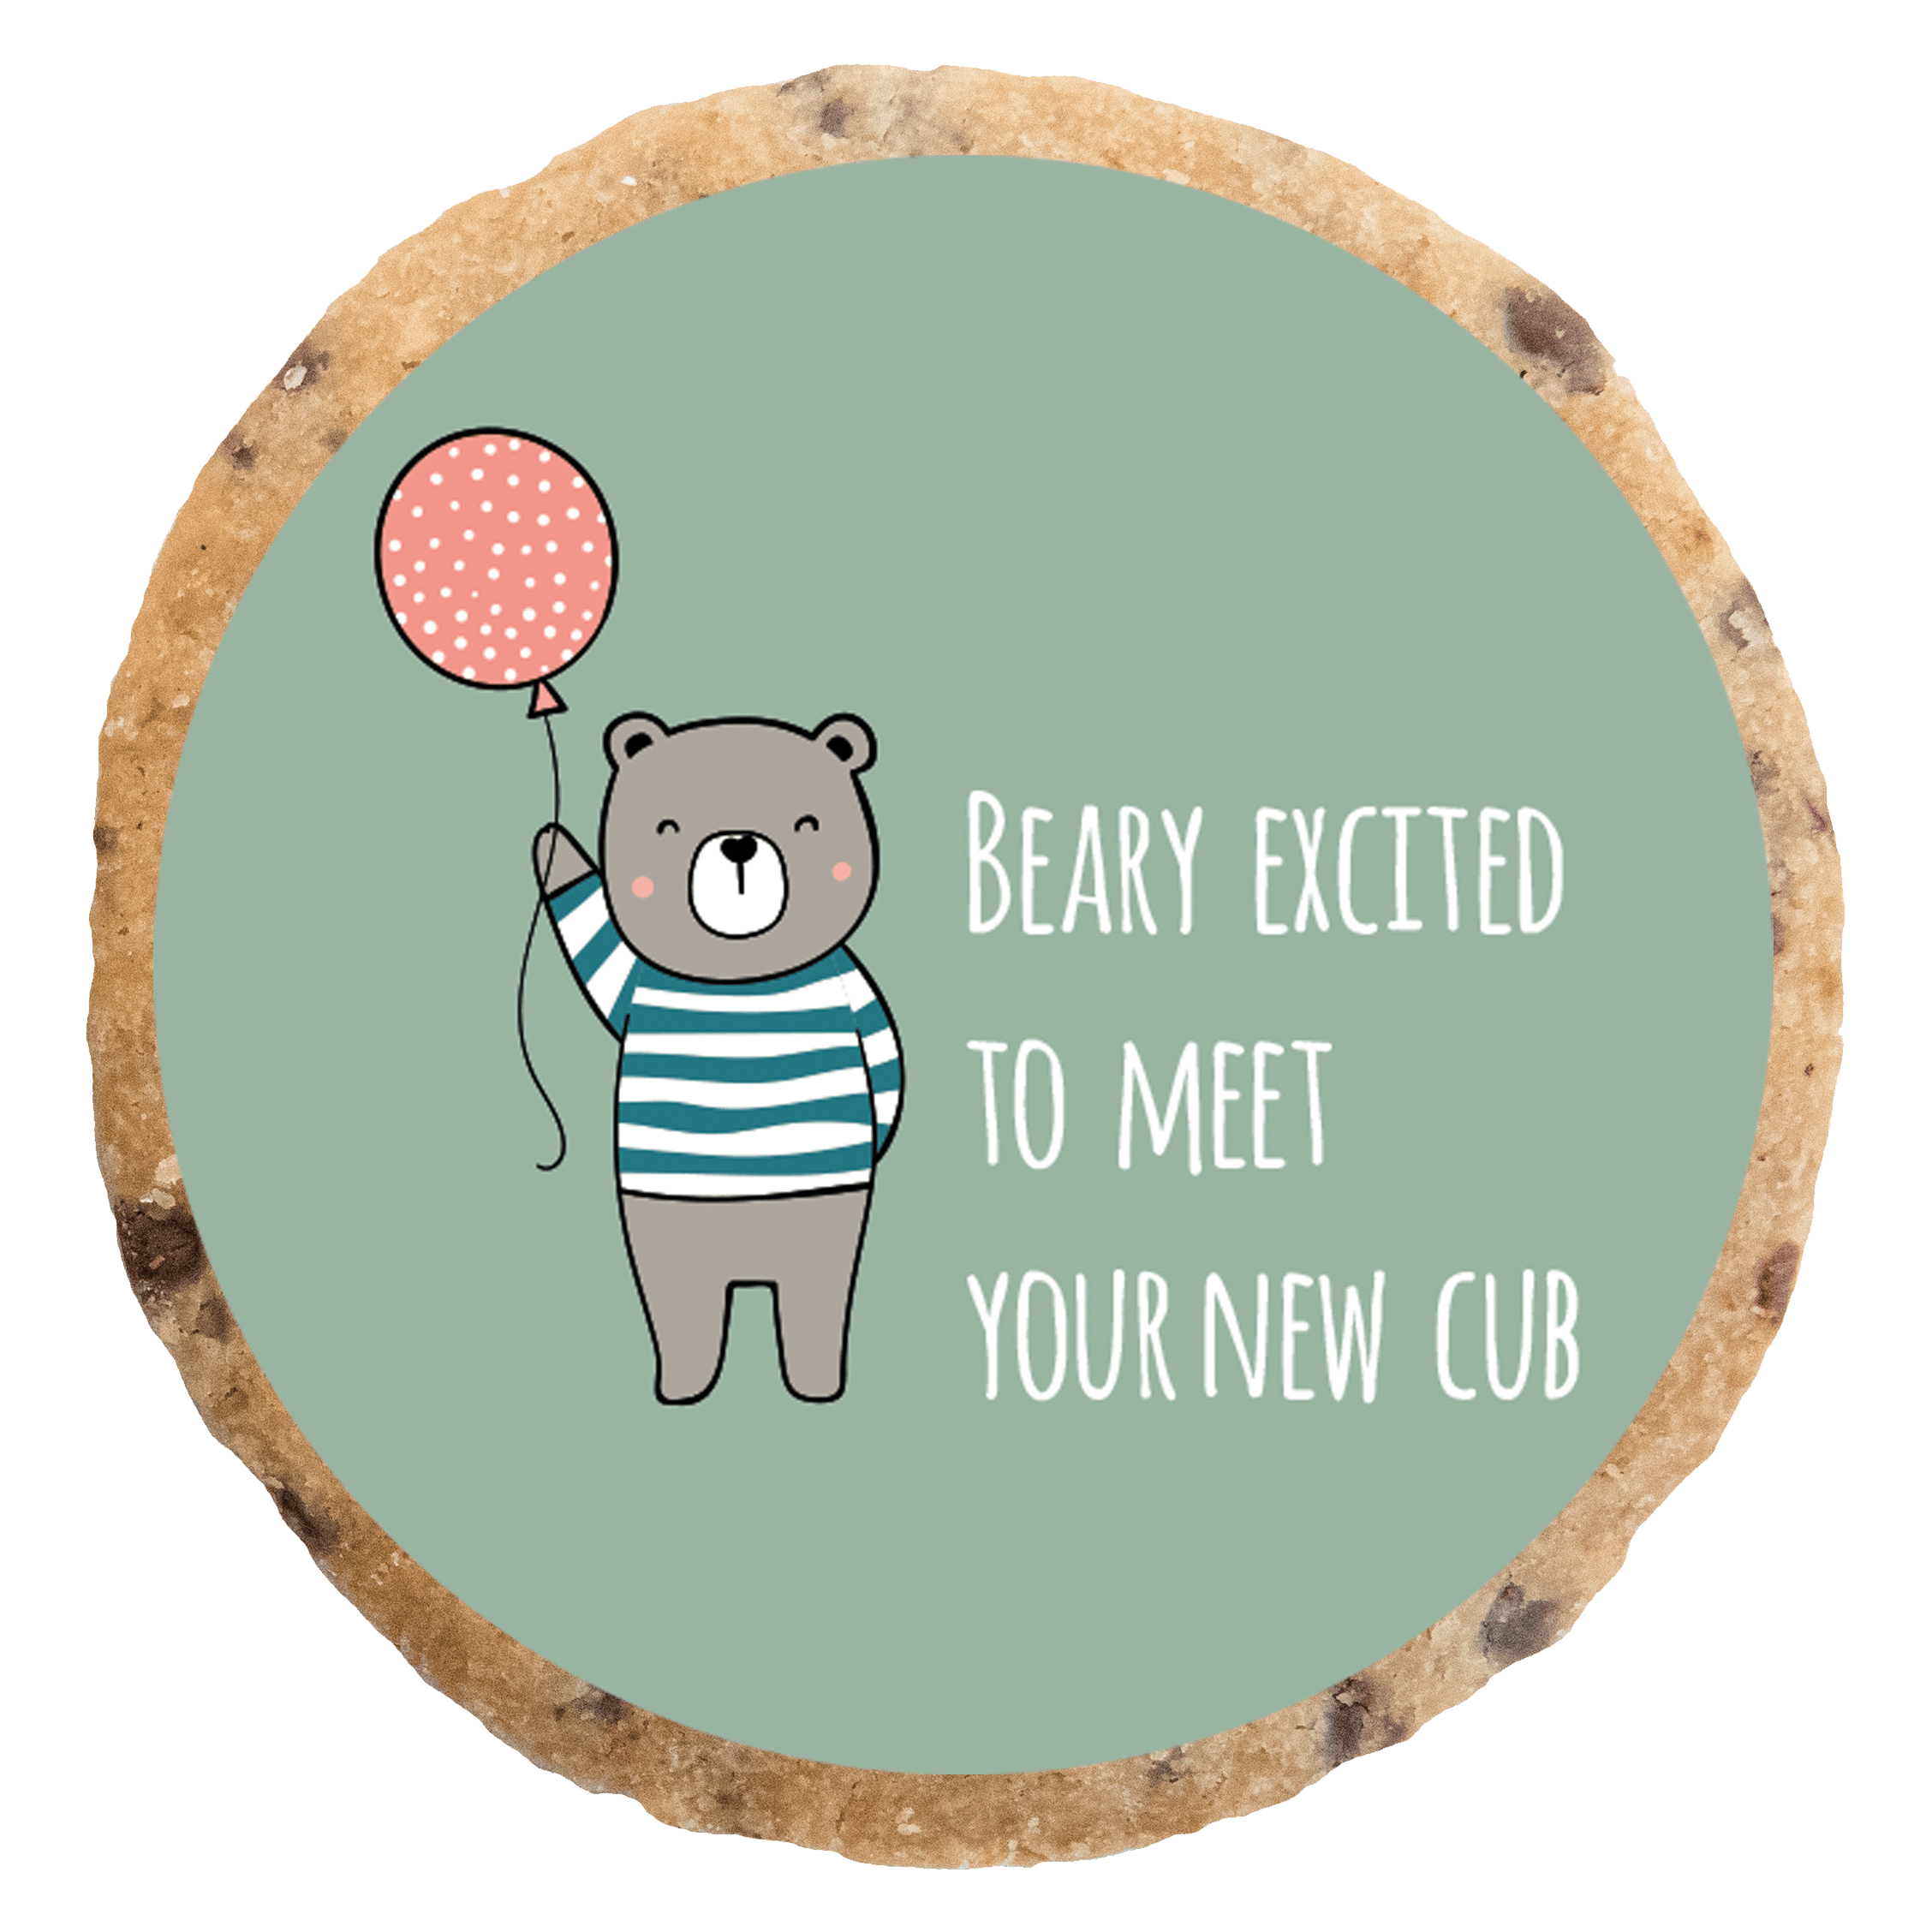 "Beary excited" MotivKEKS